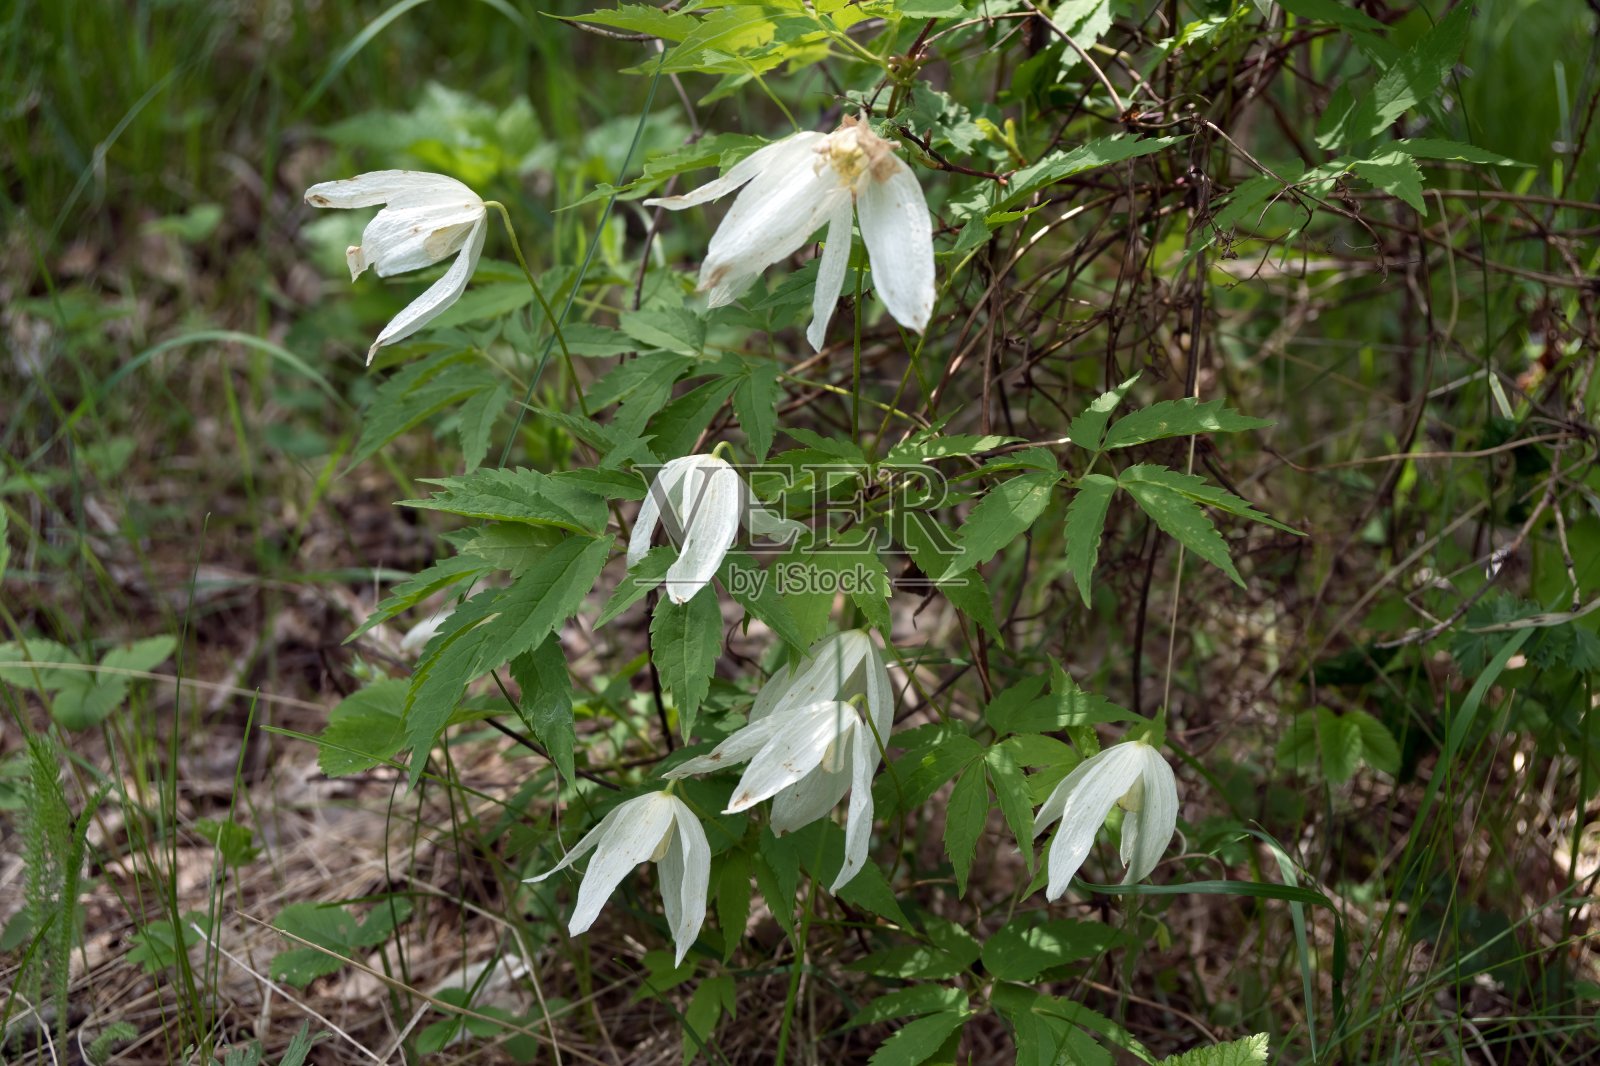 属毛茛科铁线莲属的野生西伯利亚藤本植物(Atragene sibirica L.)。照片摄影图片